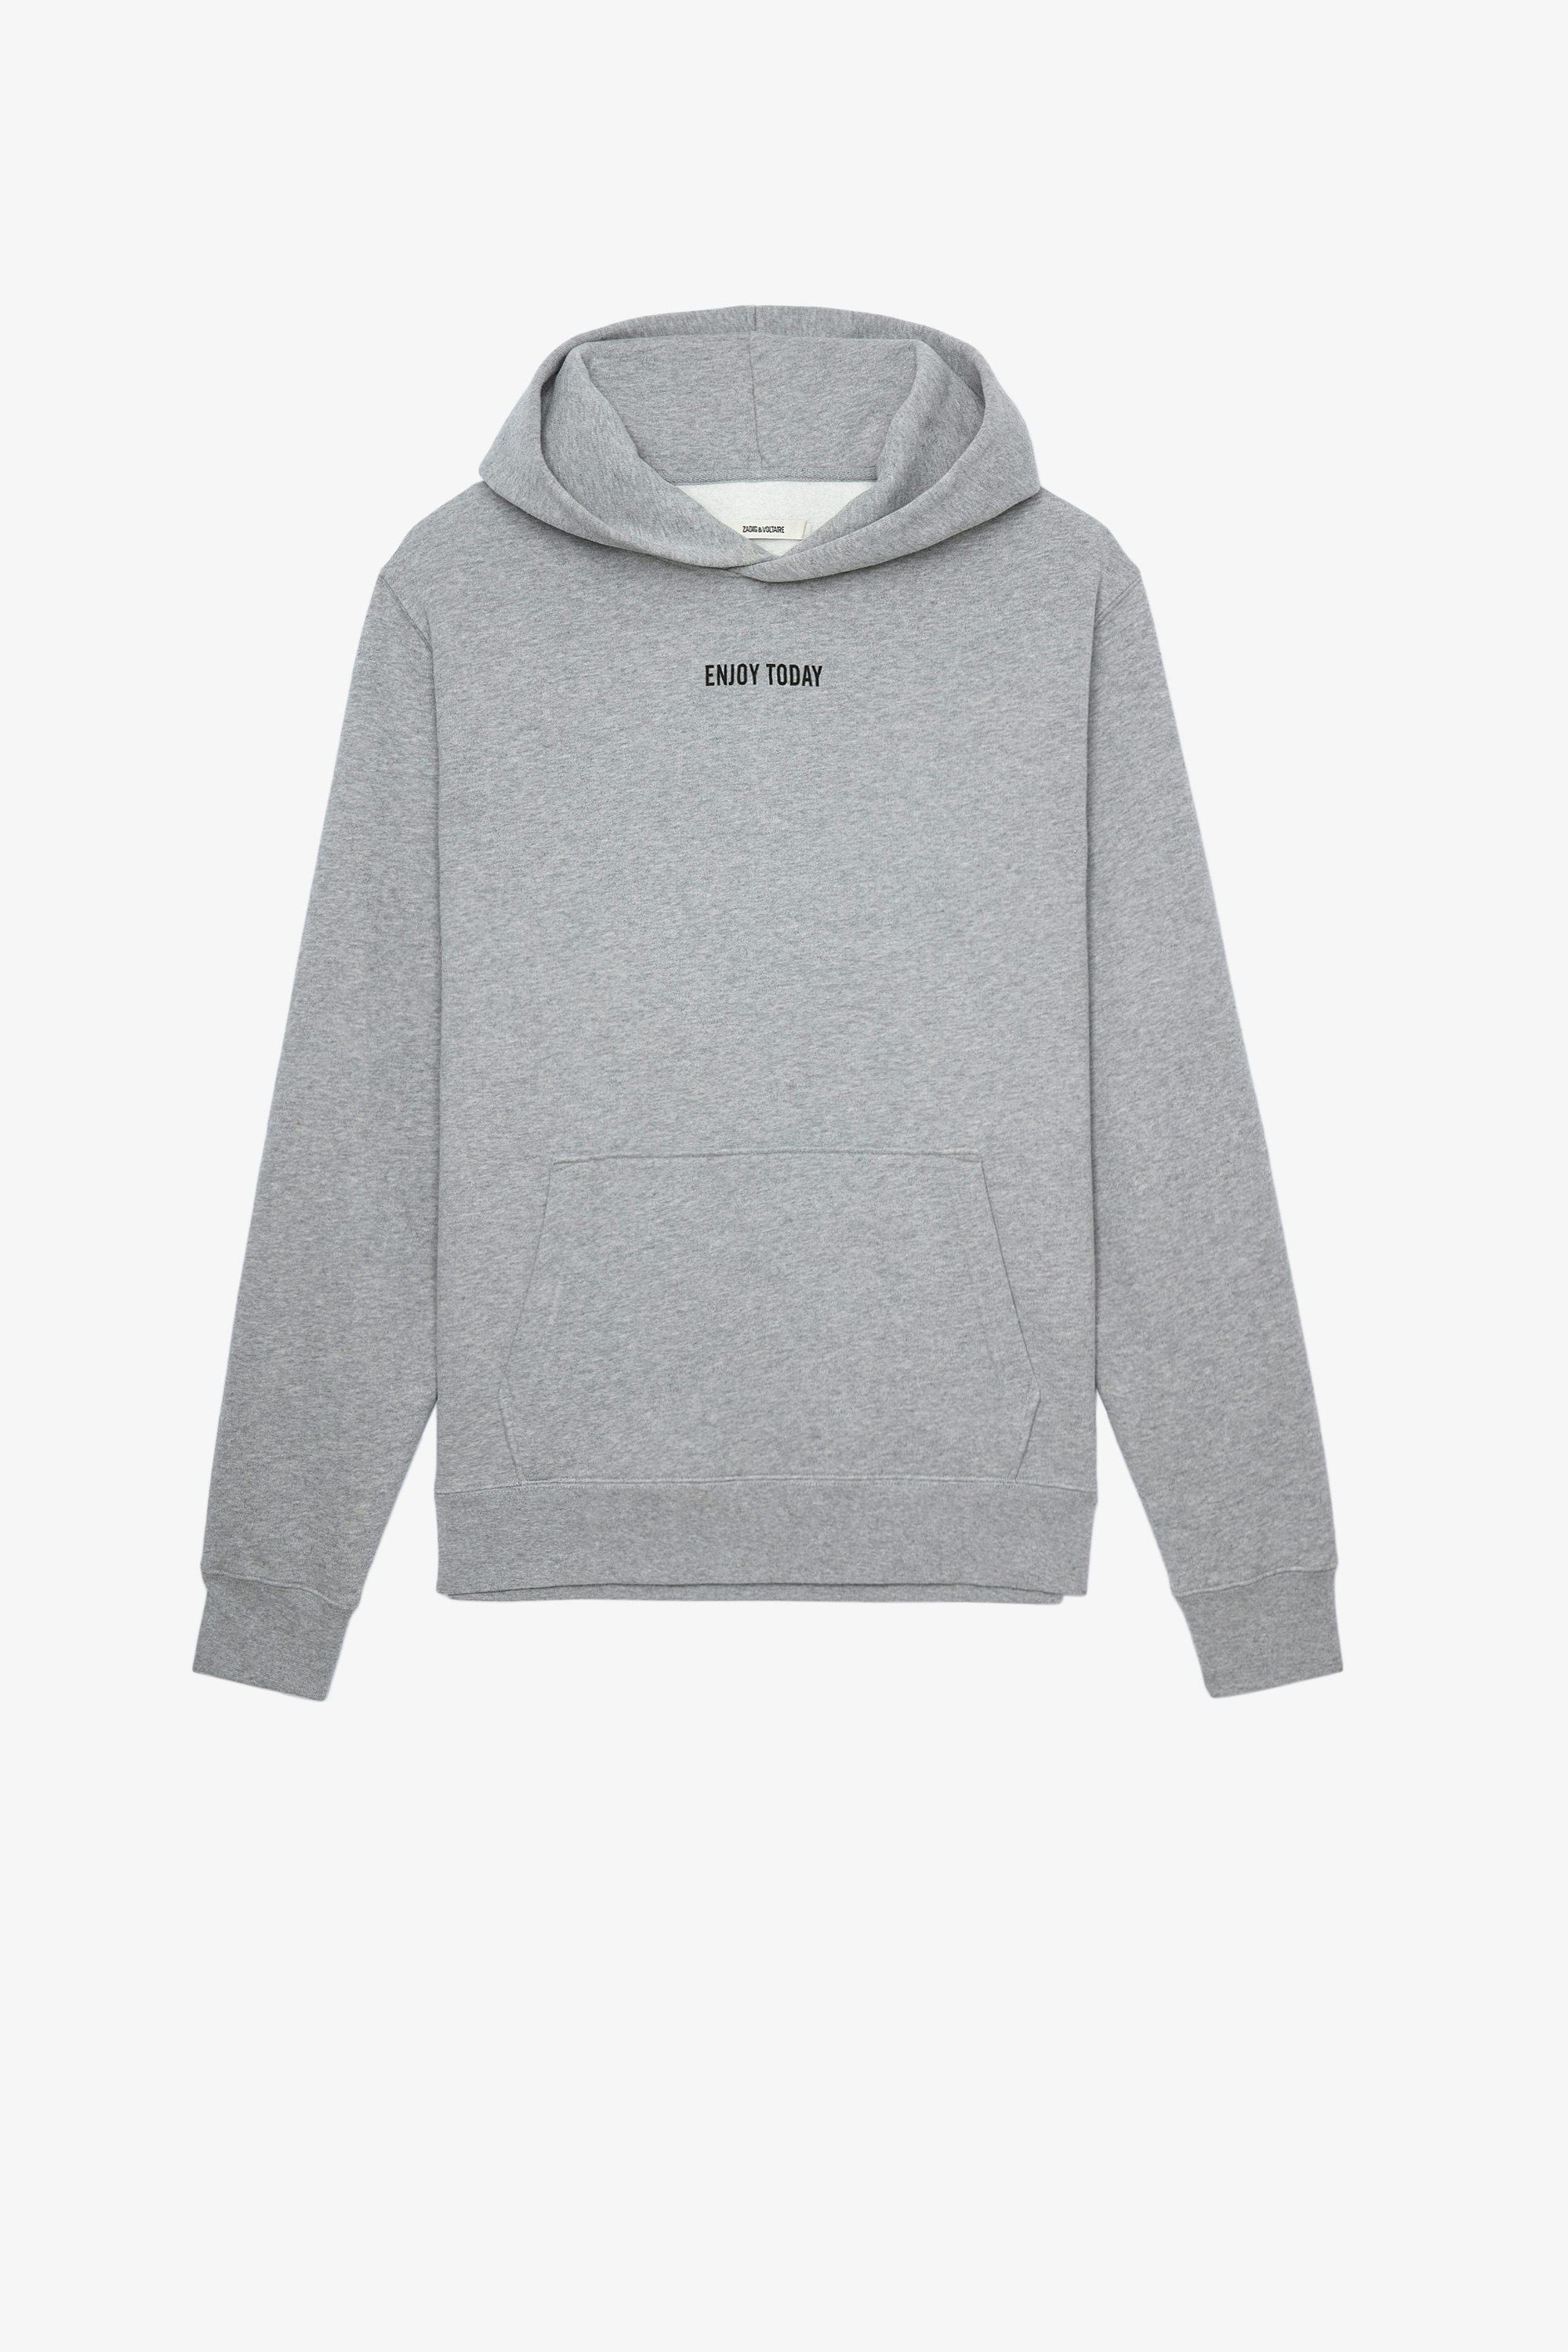 Sweatshirt Sanchi Photoprint Sweatshirt en coton gris clair orné d'un photoprint au dos Homme